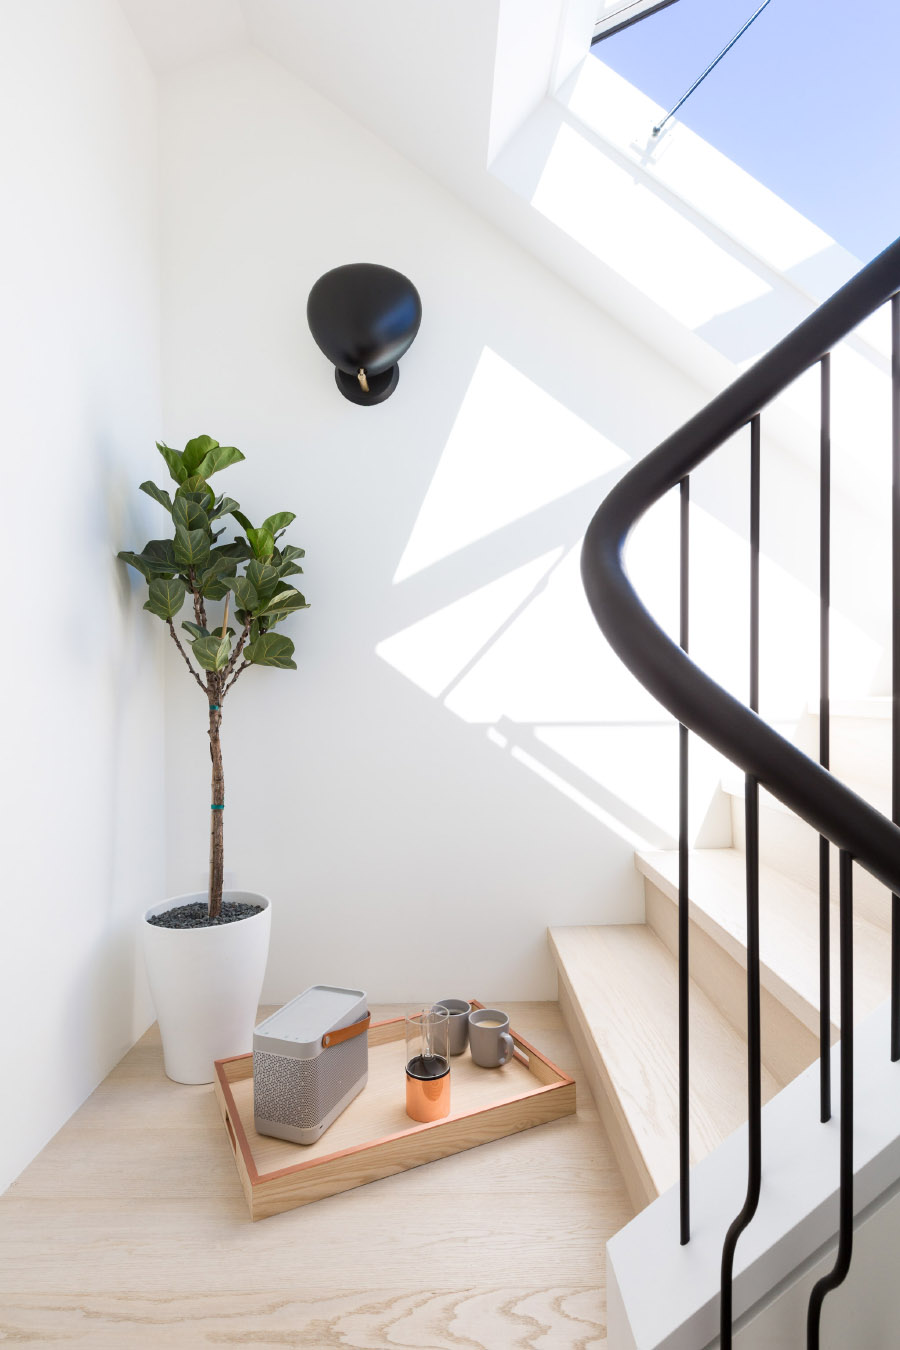 Escaleras de madera con luz natural